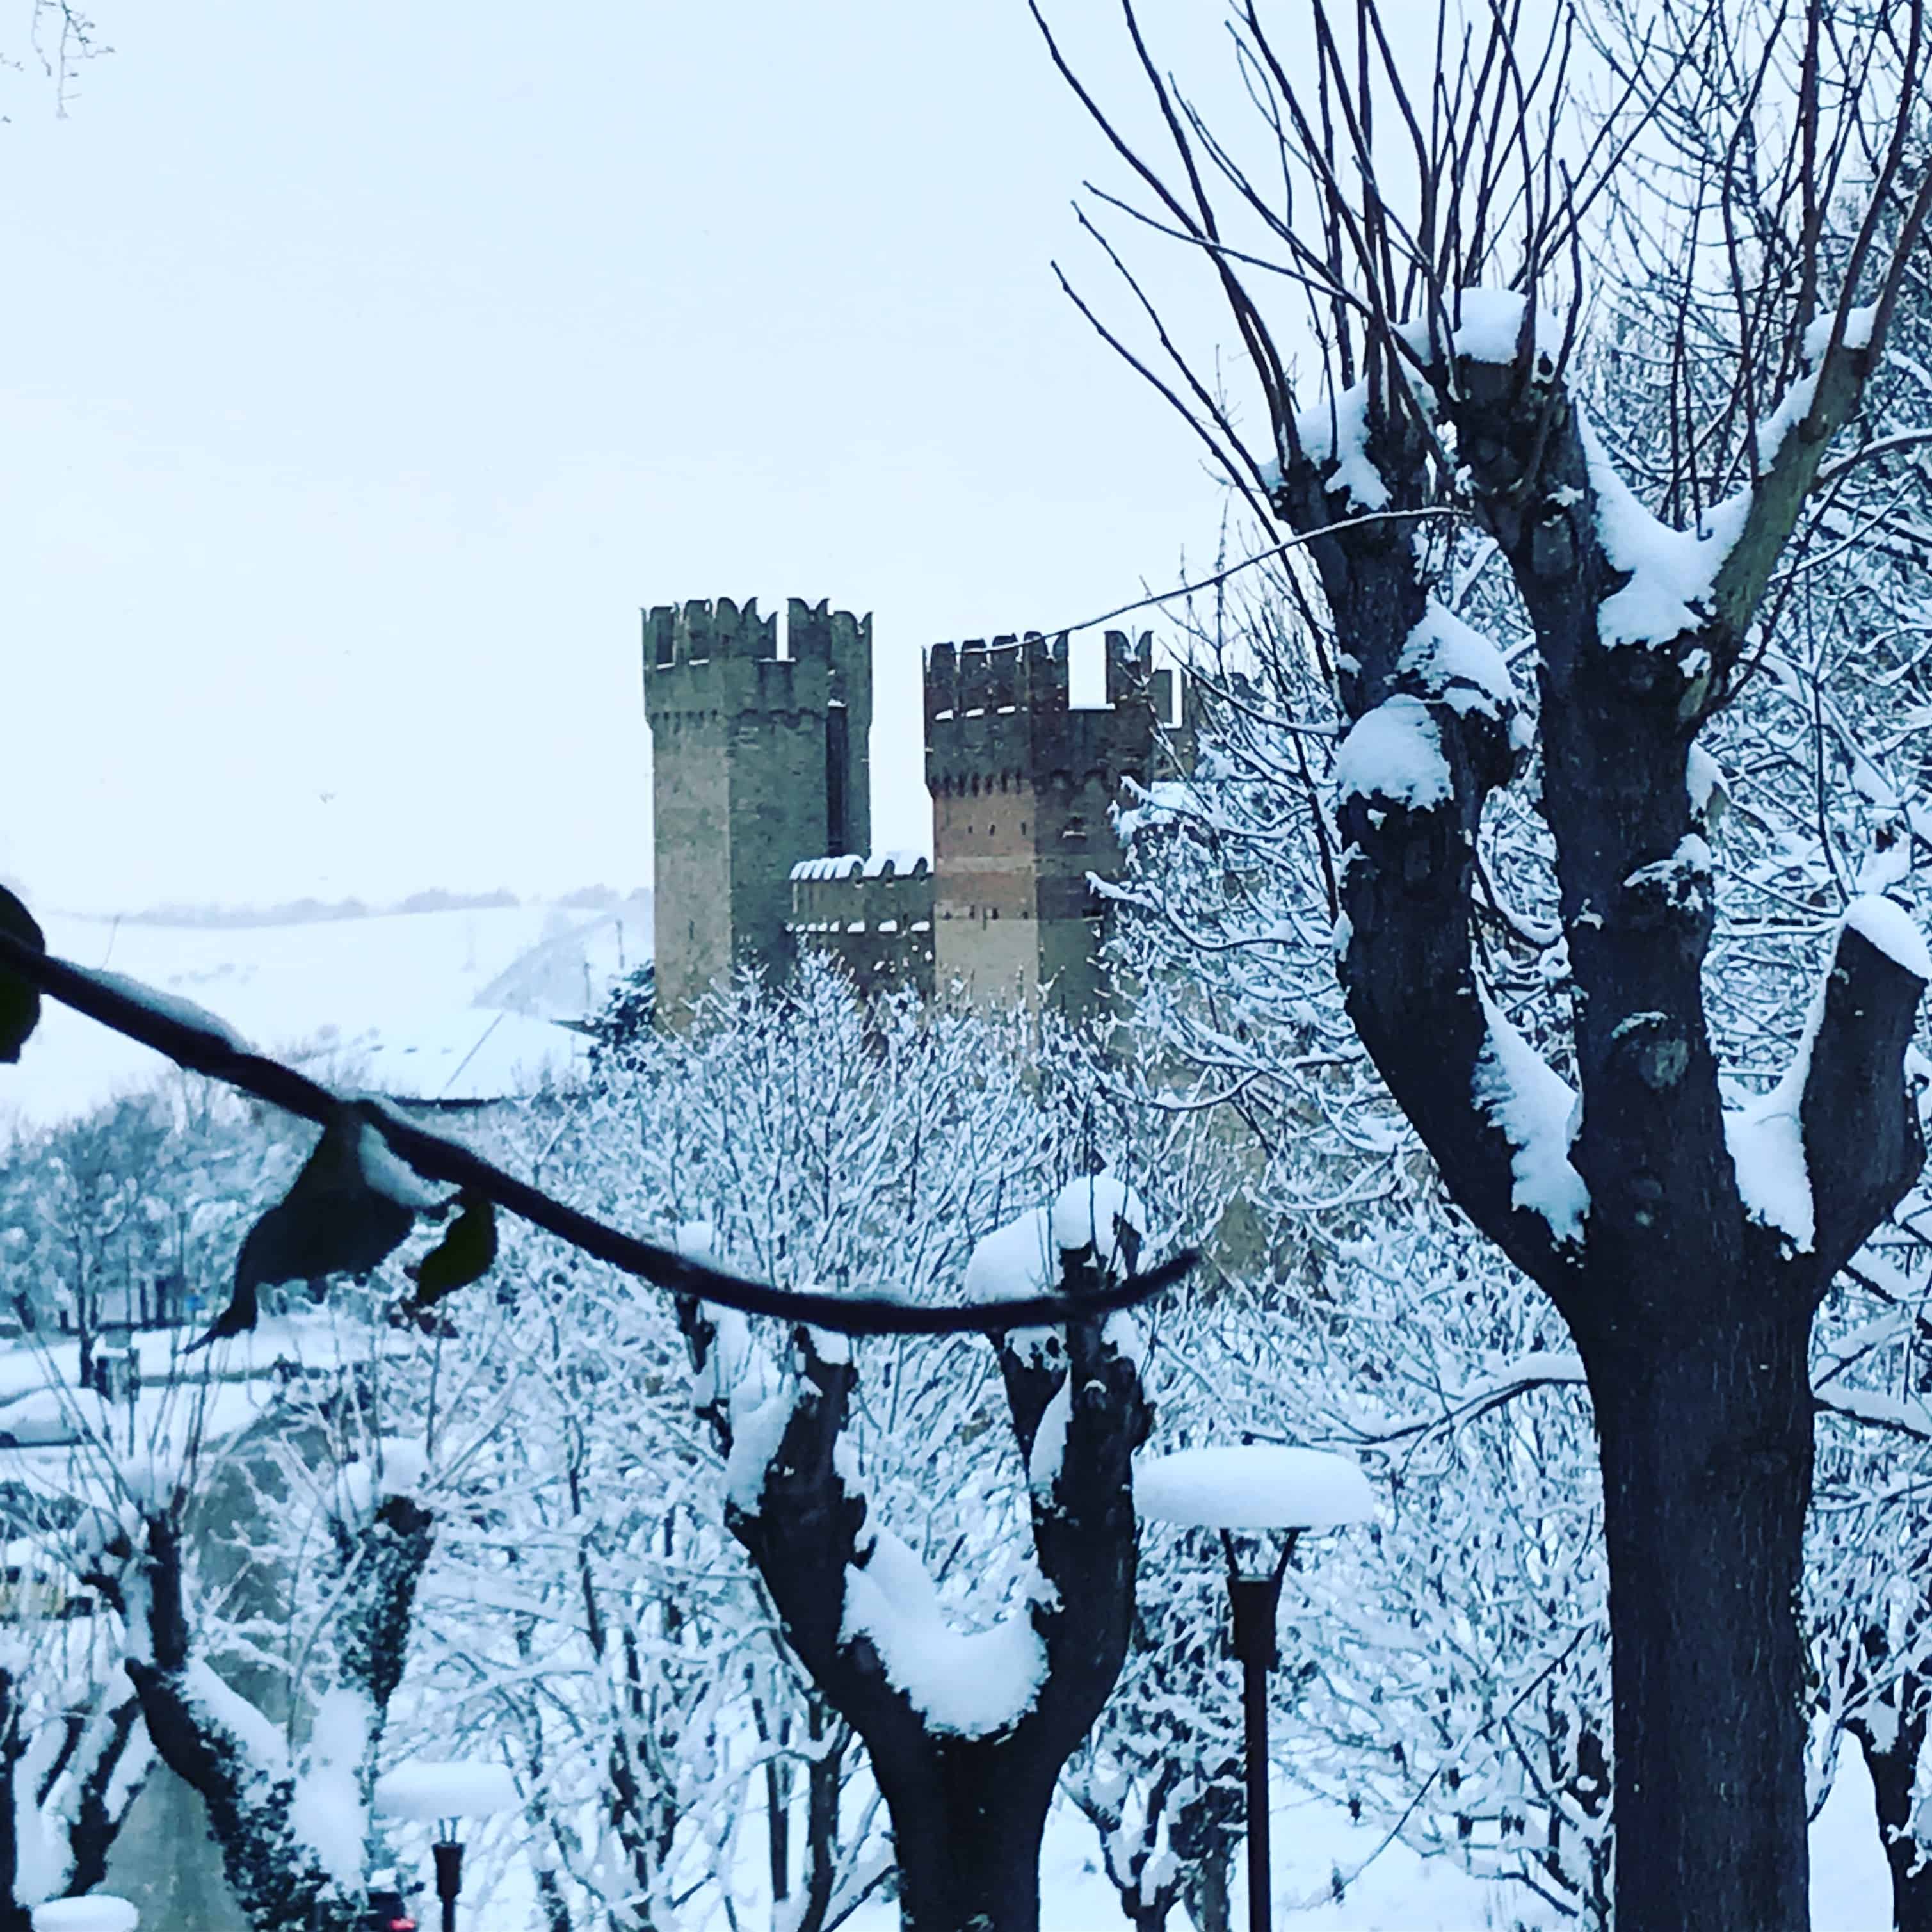 La neve regala “Magia” anche d’inverno al Castello  | Andrea Albertini - e-borghi Community